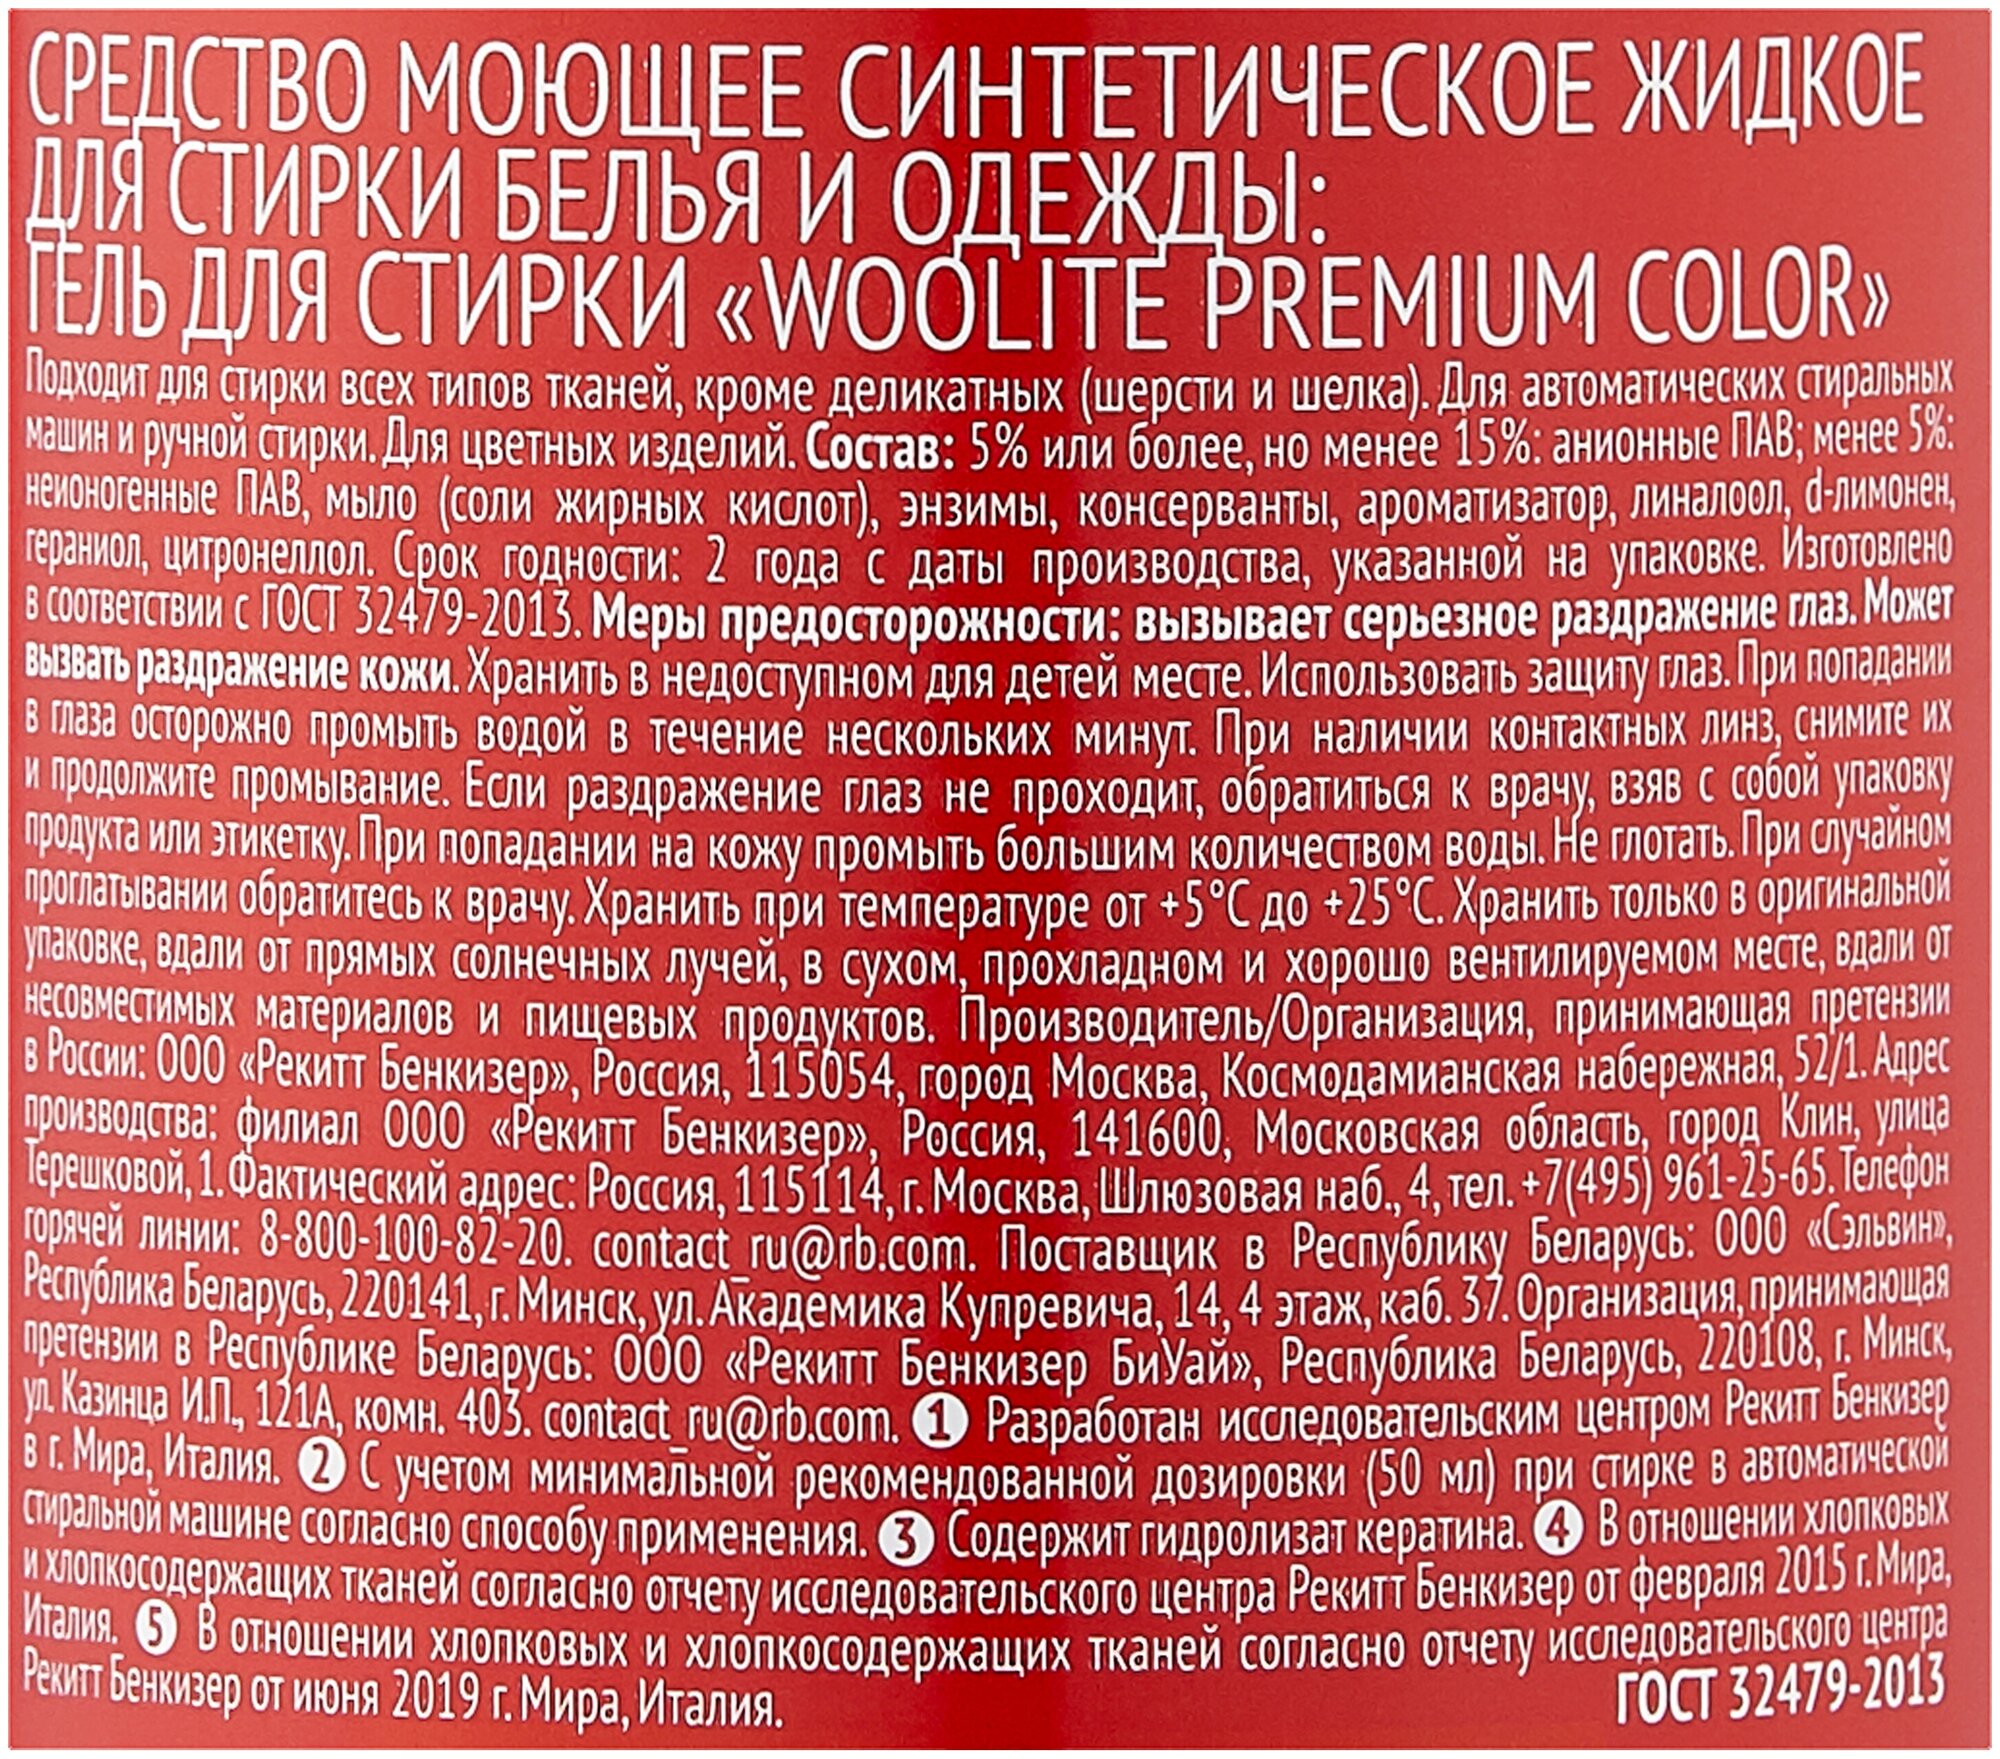 Гель для стирки Woolite Premium Color 450мл - фото №3